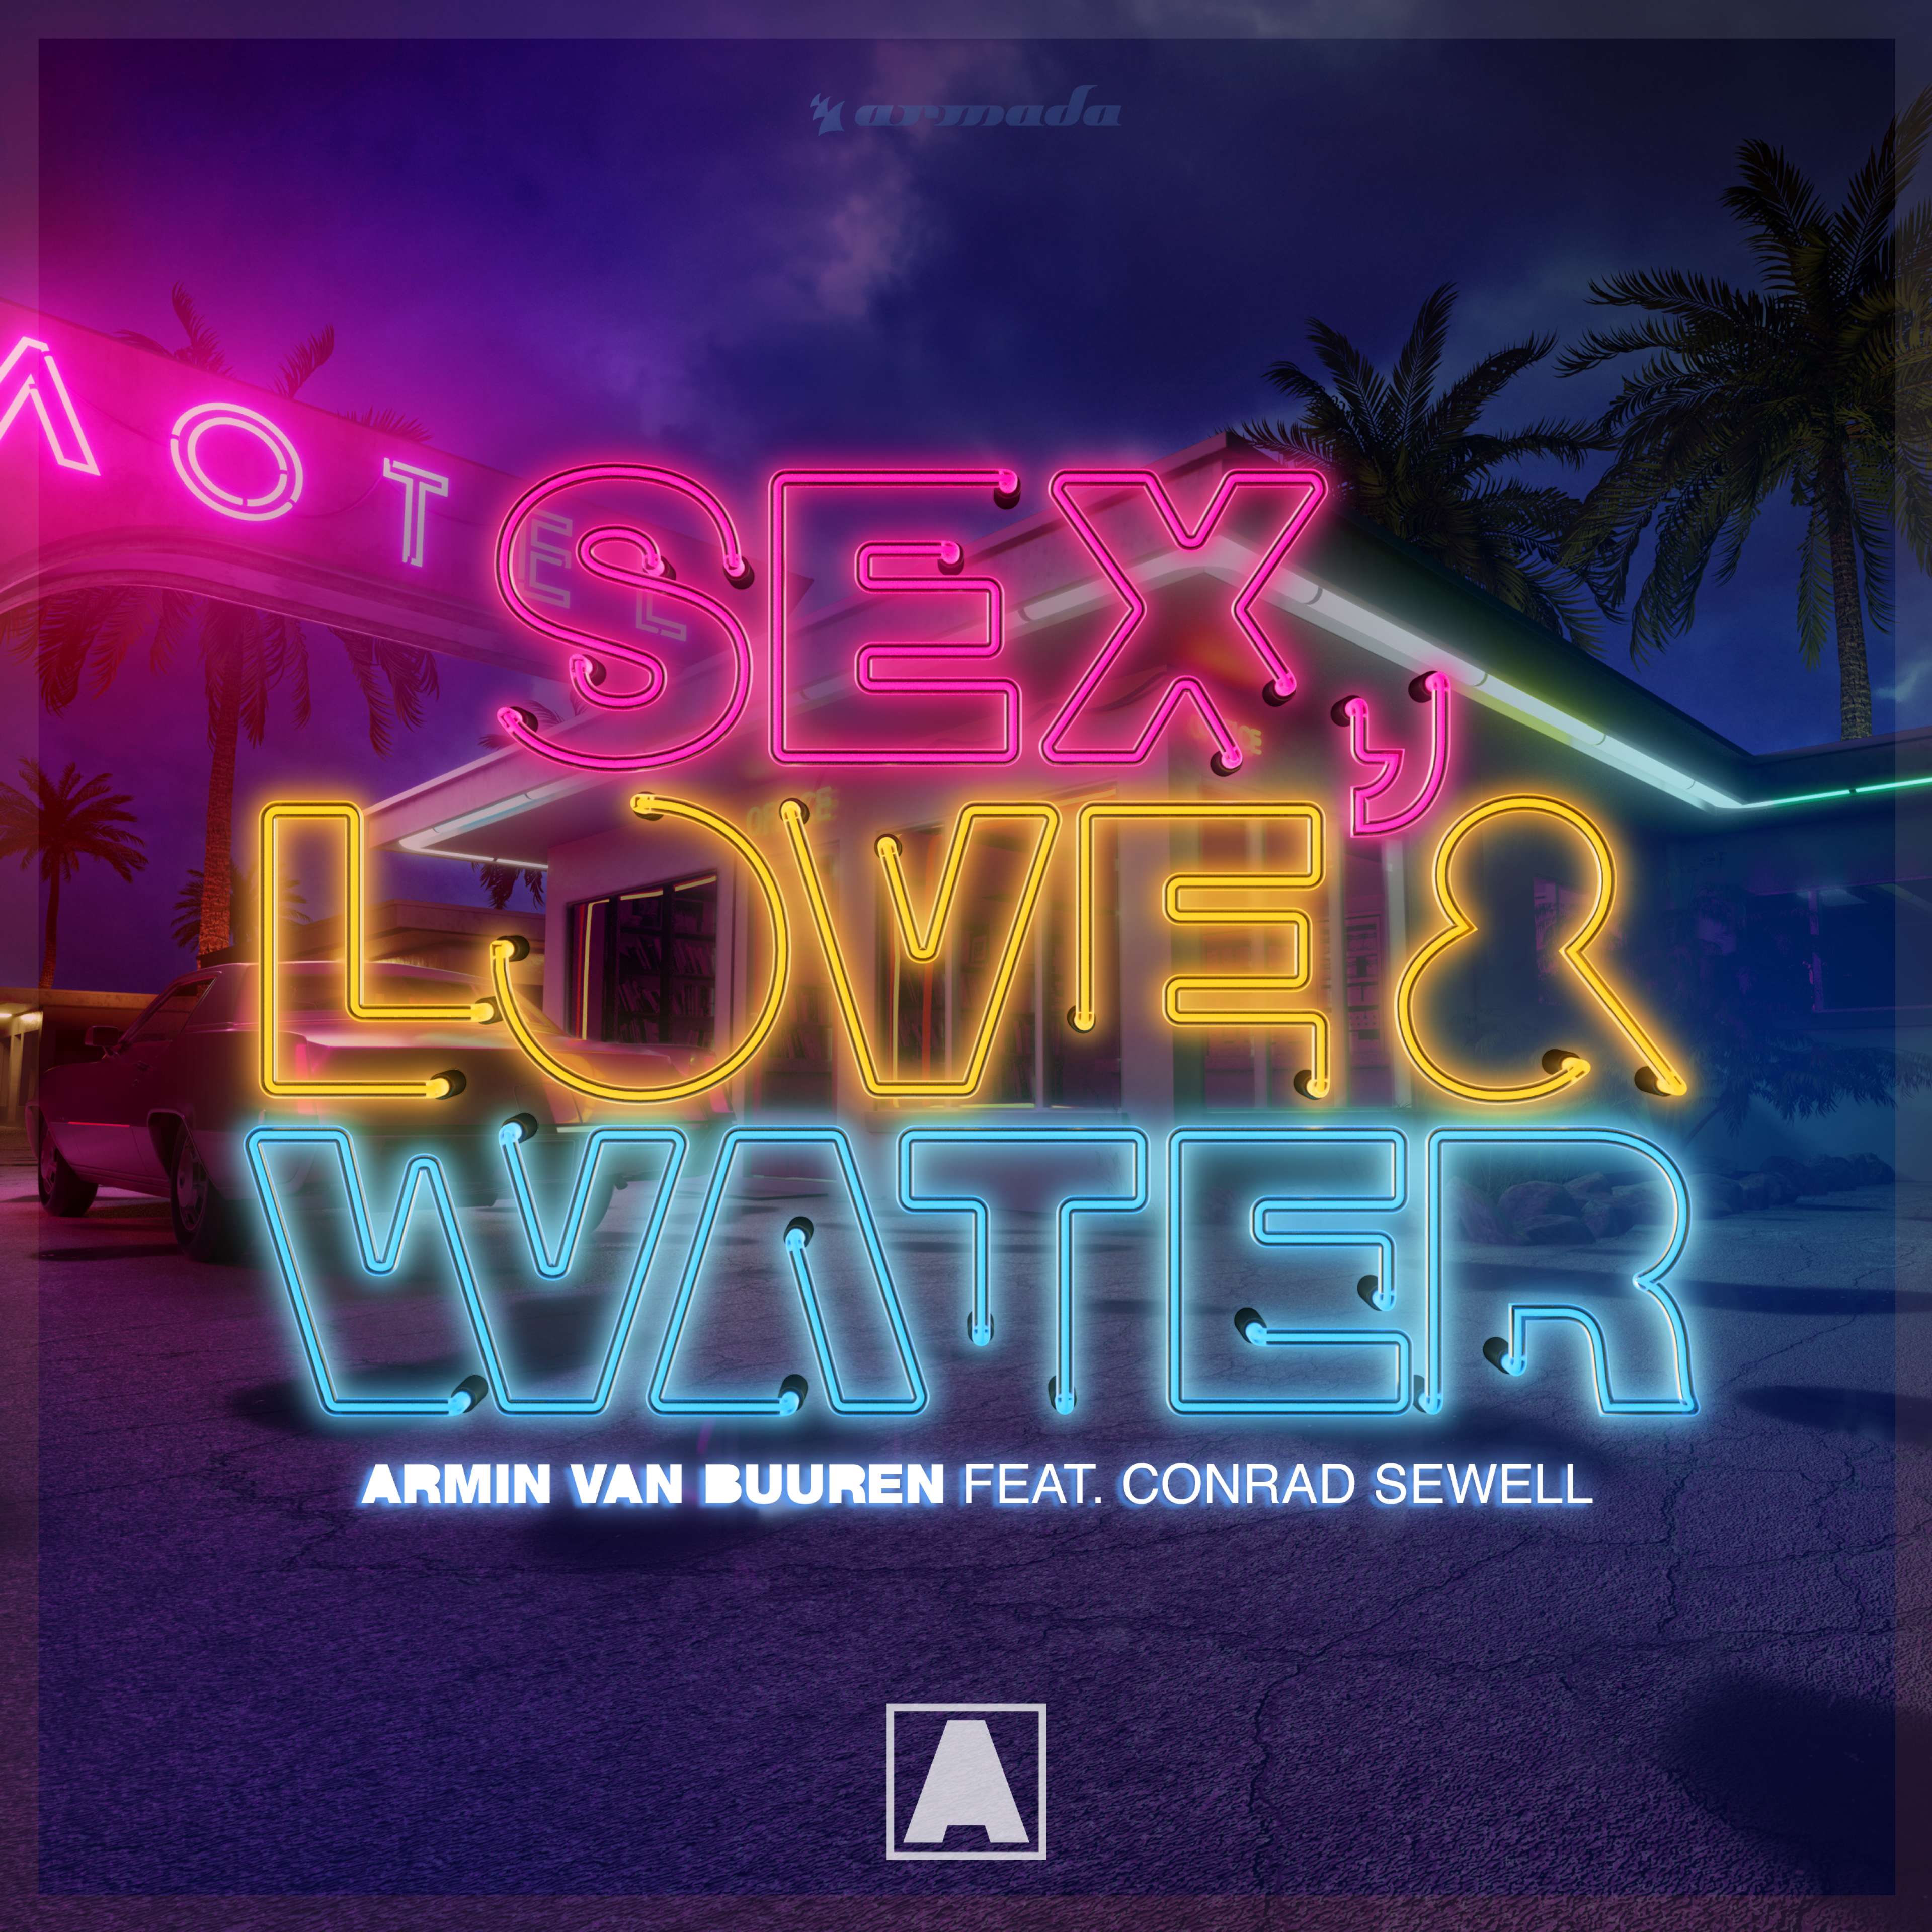 Armin van Buuren's new banger 'Sex, Love & Water' added to The Edge 96.1